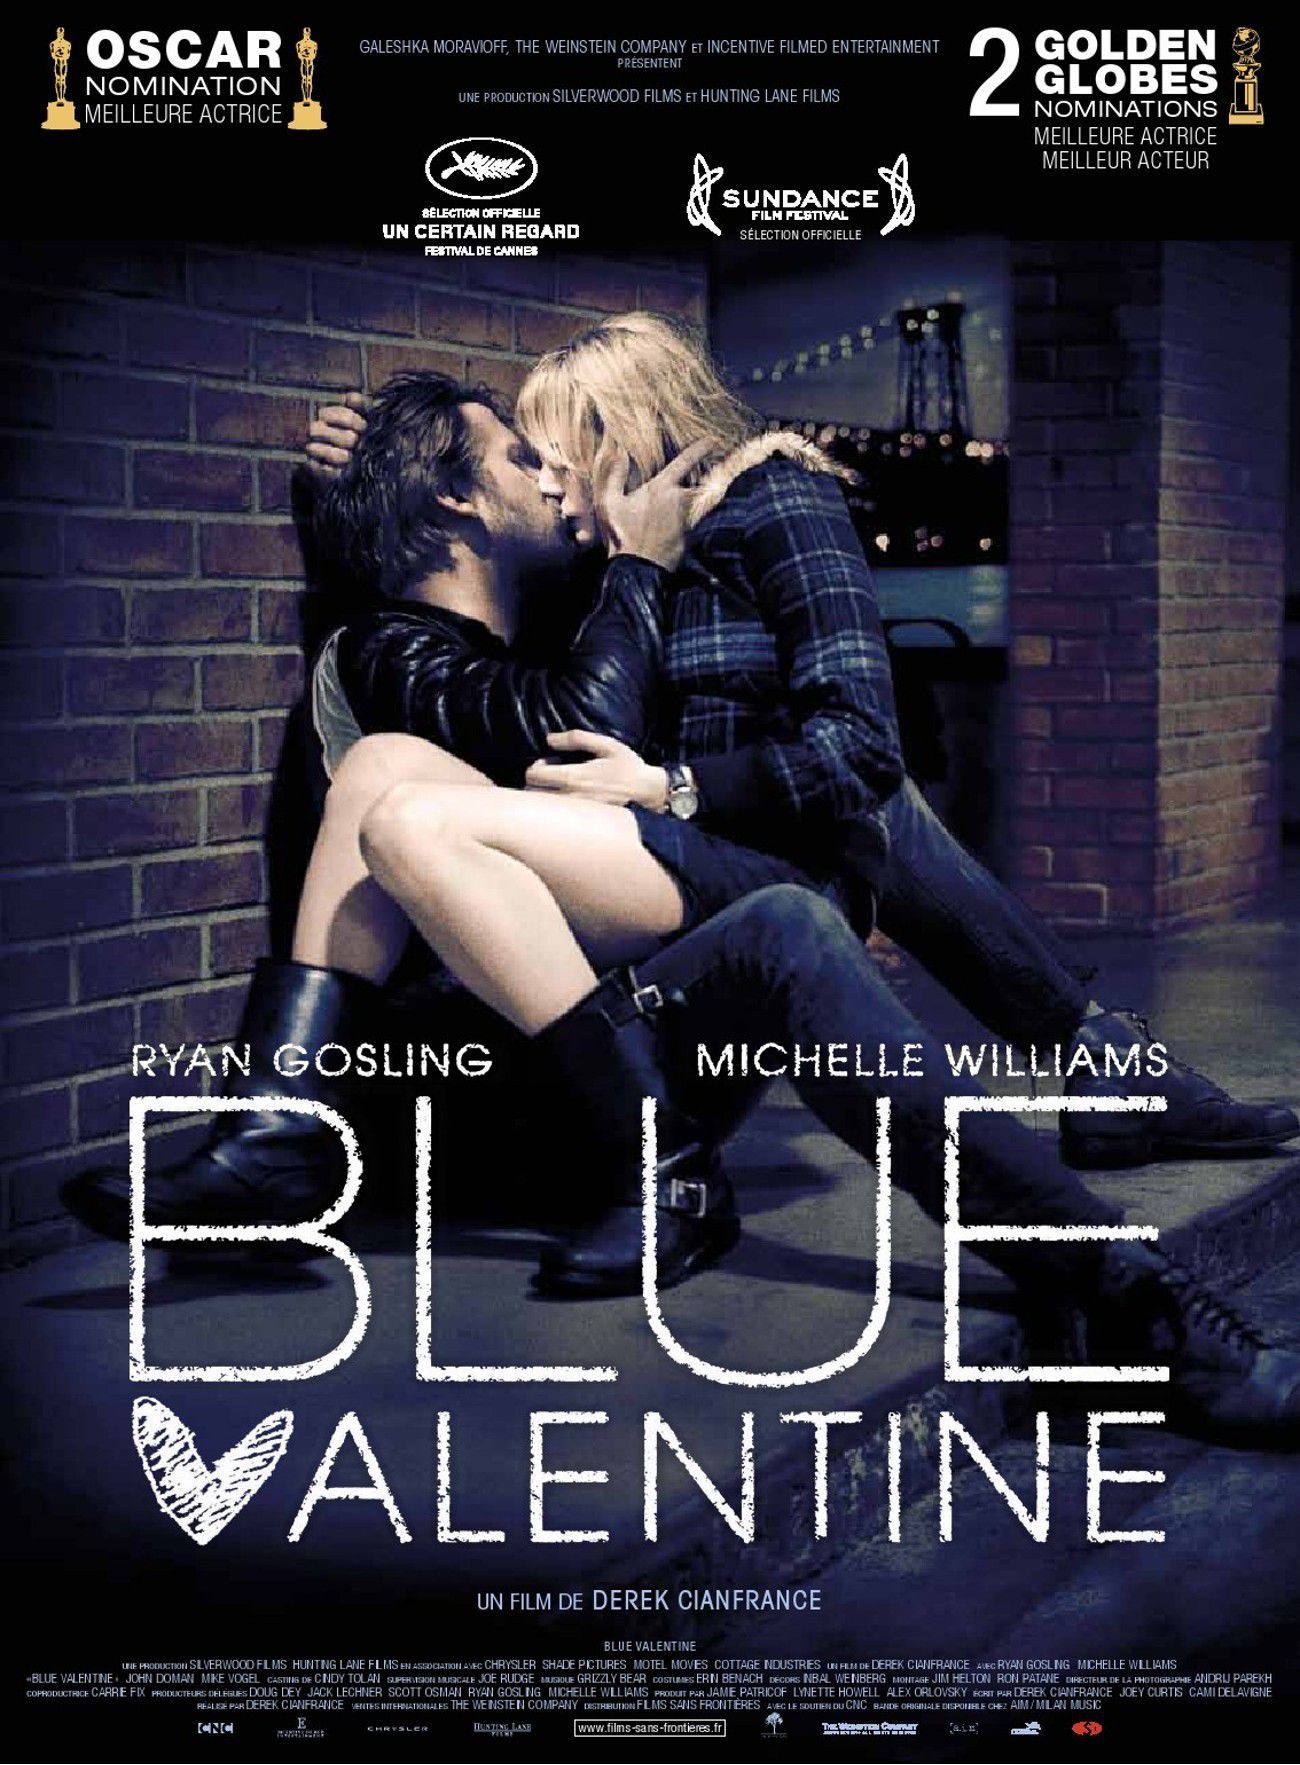 Blue Valentine - Film (2010)